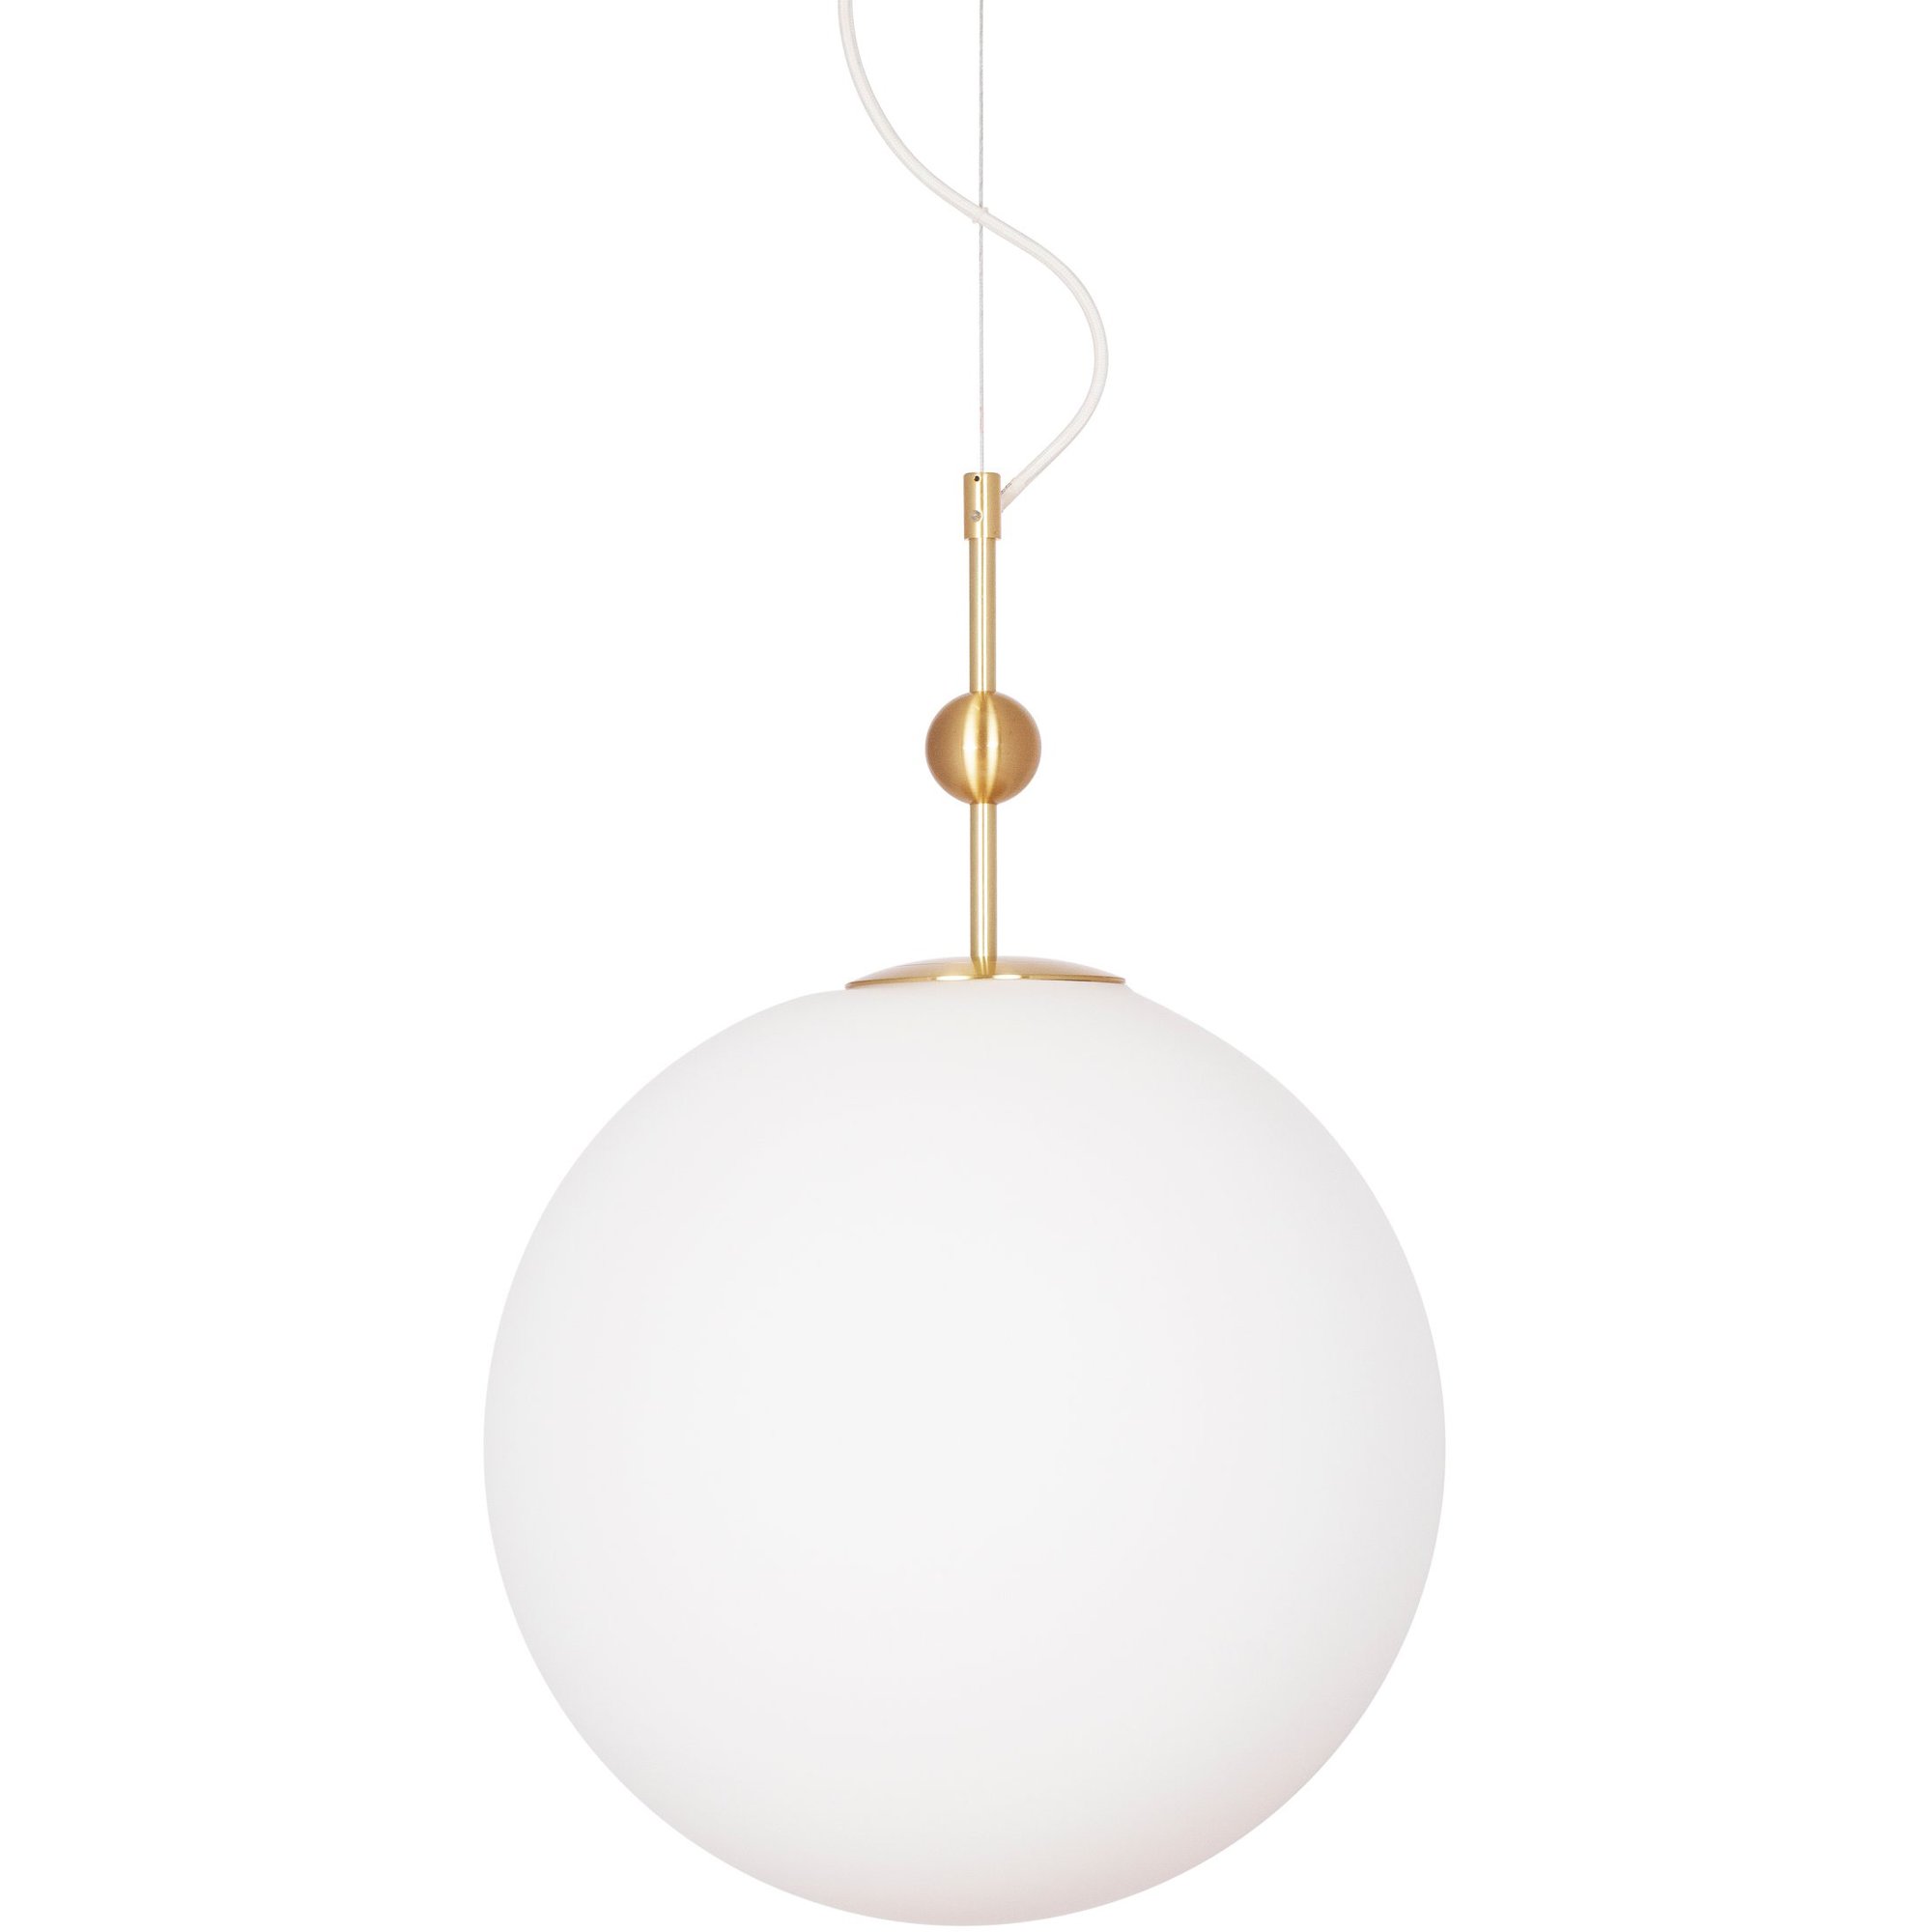 Globen Lighting Astrid-riippuvalaisin 40 cm harjattu messinki / valkoinen